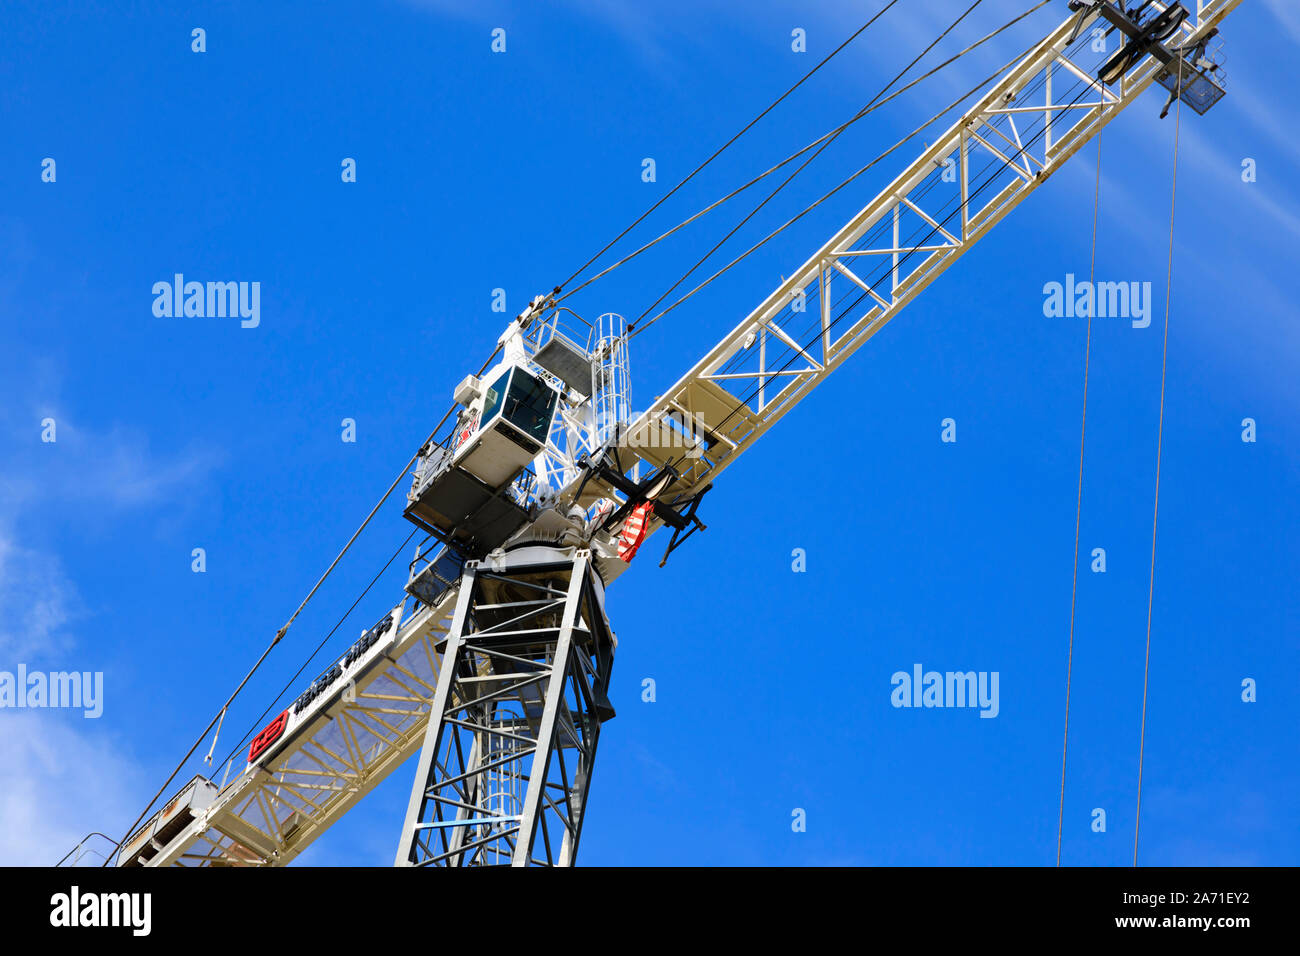 Mobilkran von Hensel Phelps Bau, Sacramento, Kalifornien, Vereinigte Staaten von Amerika Stockfoto